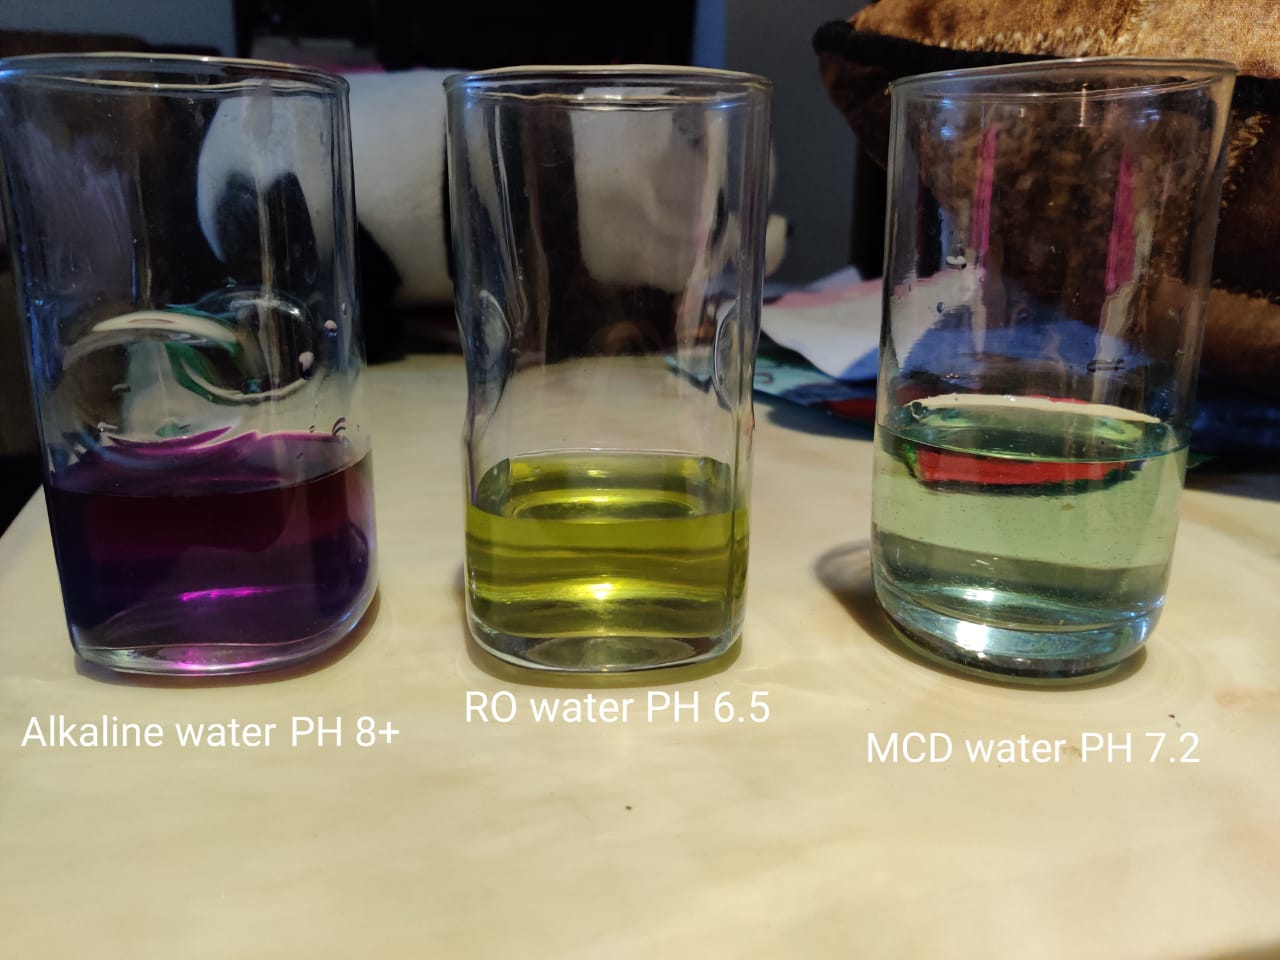 Alkaline water, RO water and MCD water